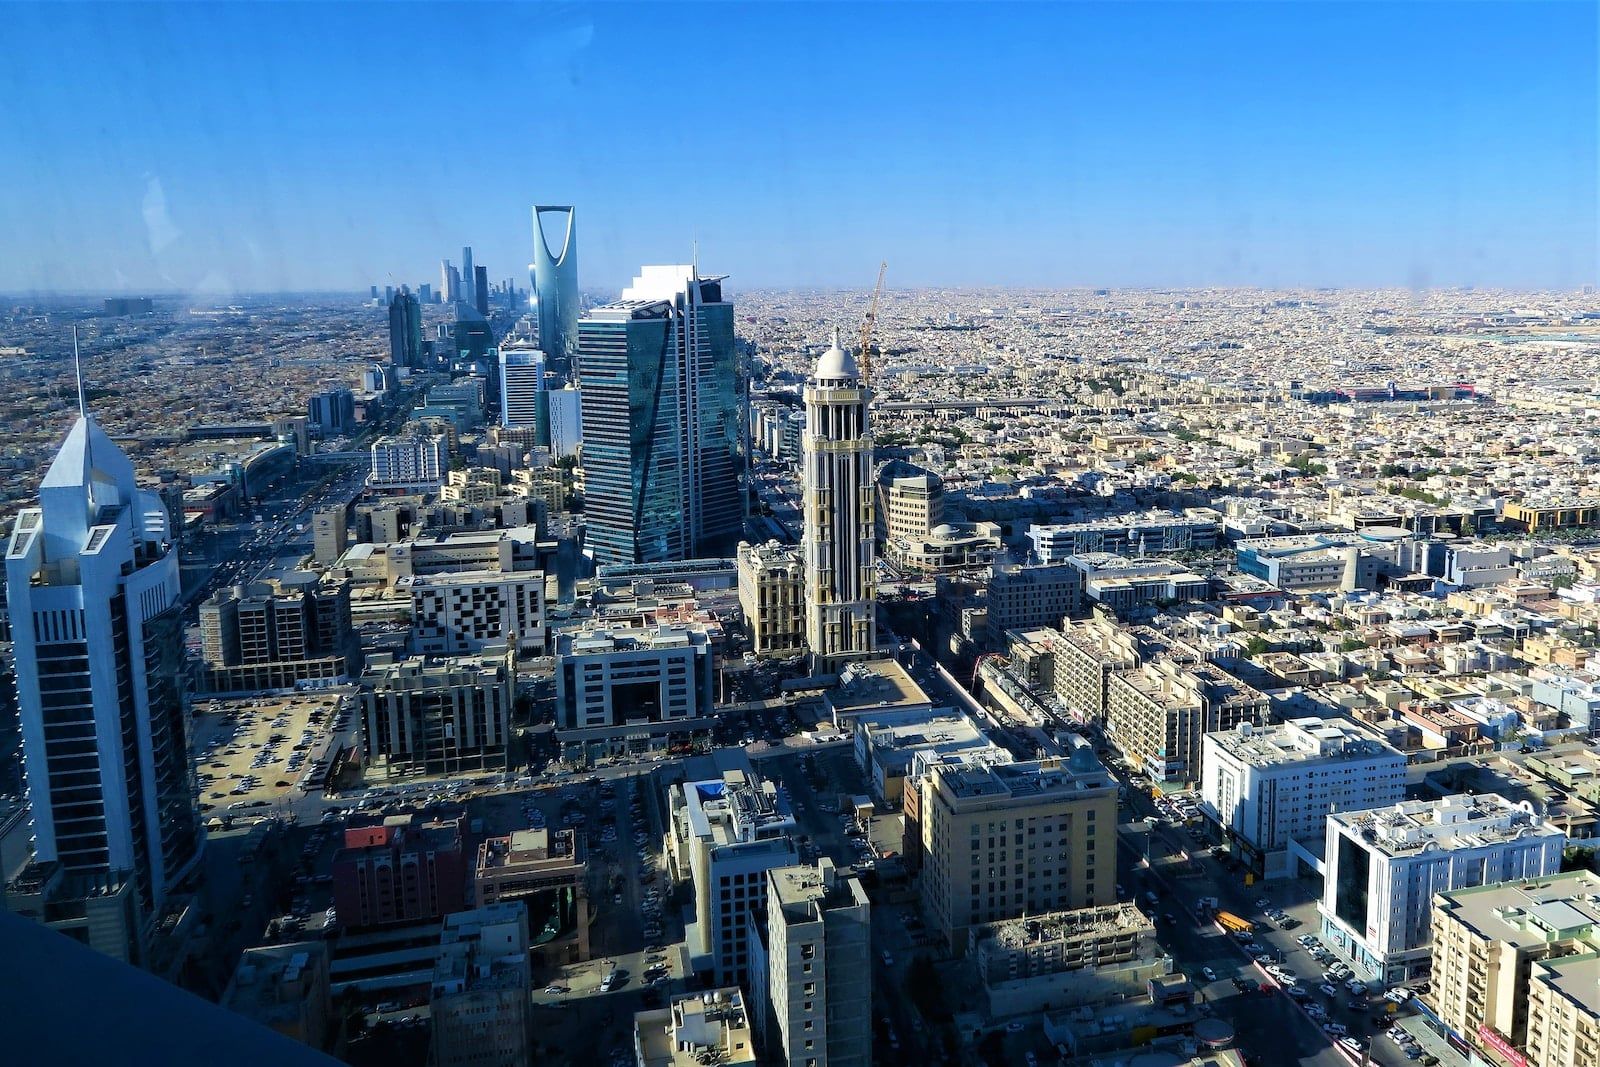 Khung cảnh thành phố nhìn từ đỉnh tòa nhà